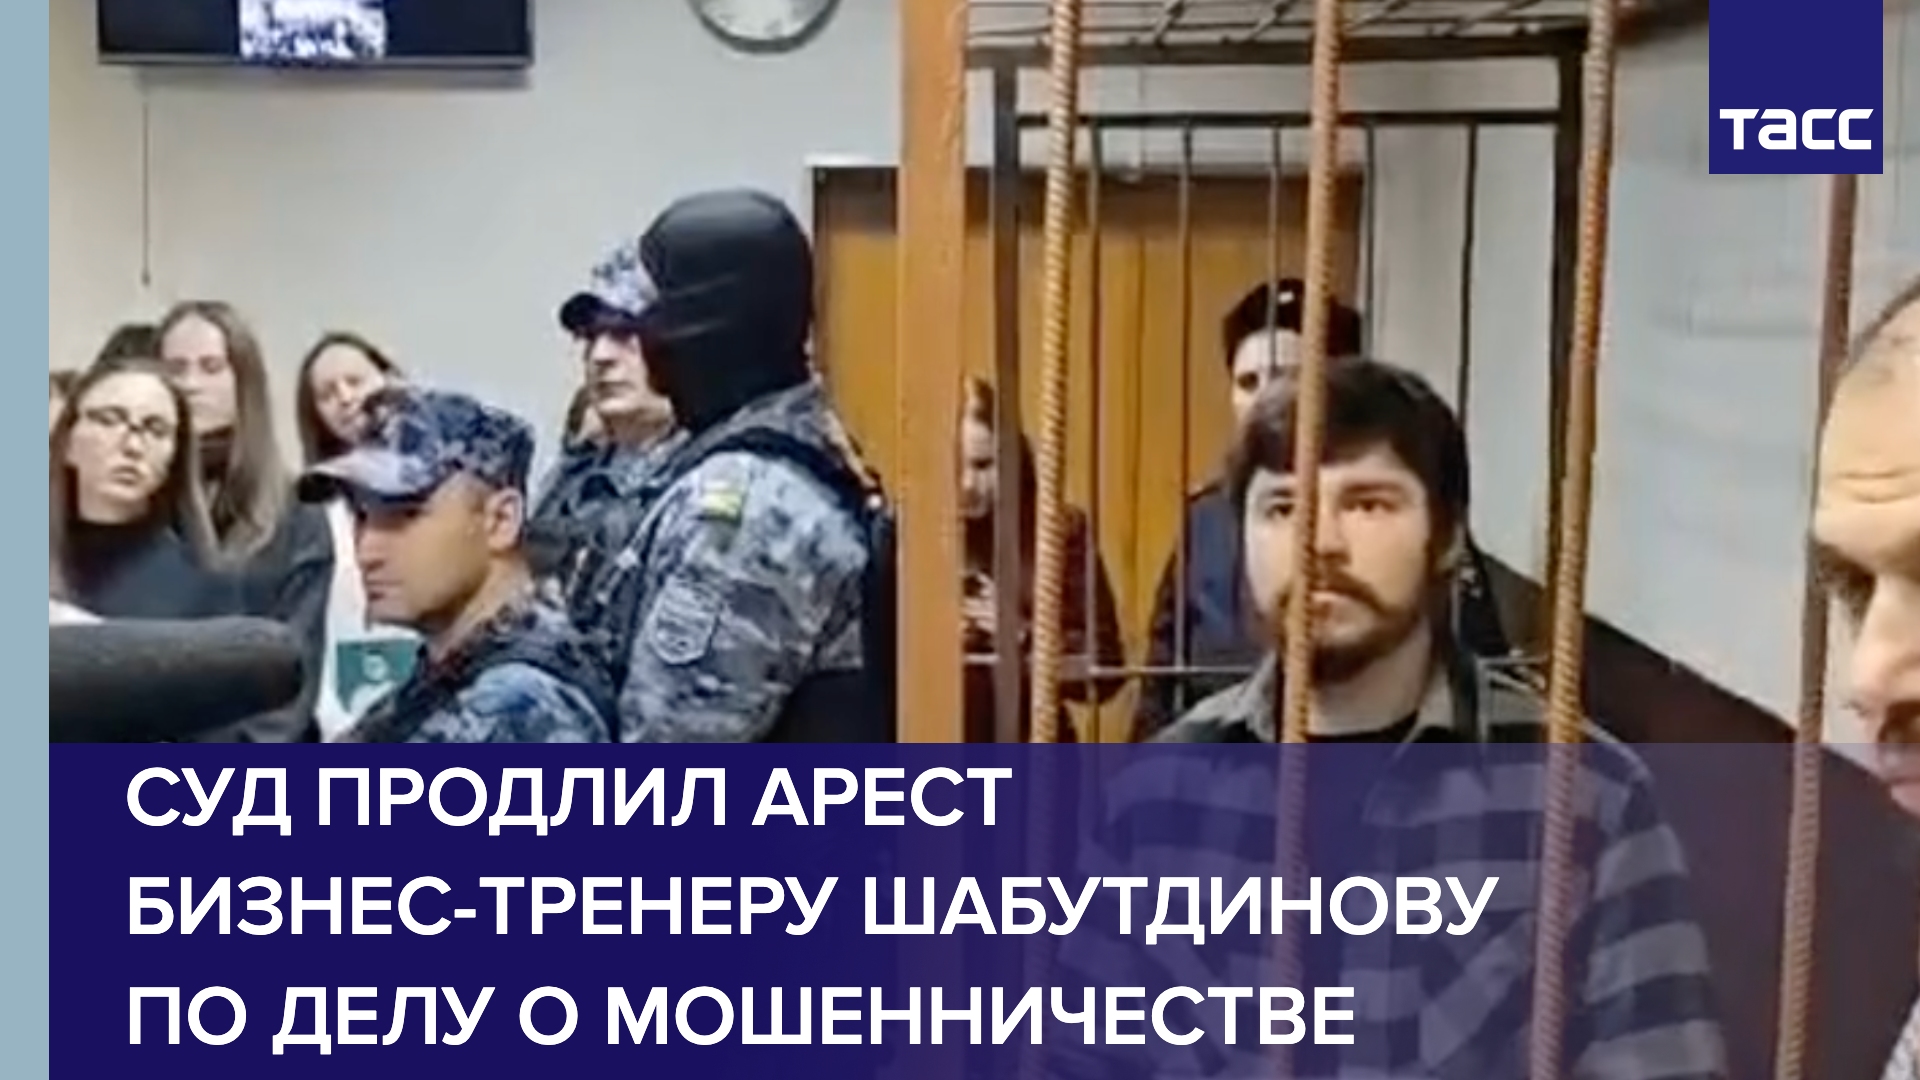 Суд в Москве продлил арест бизнес-тренеру Шабутдинову по делу о мошенничестве